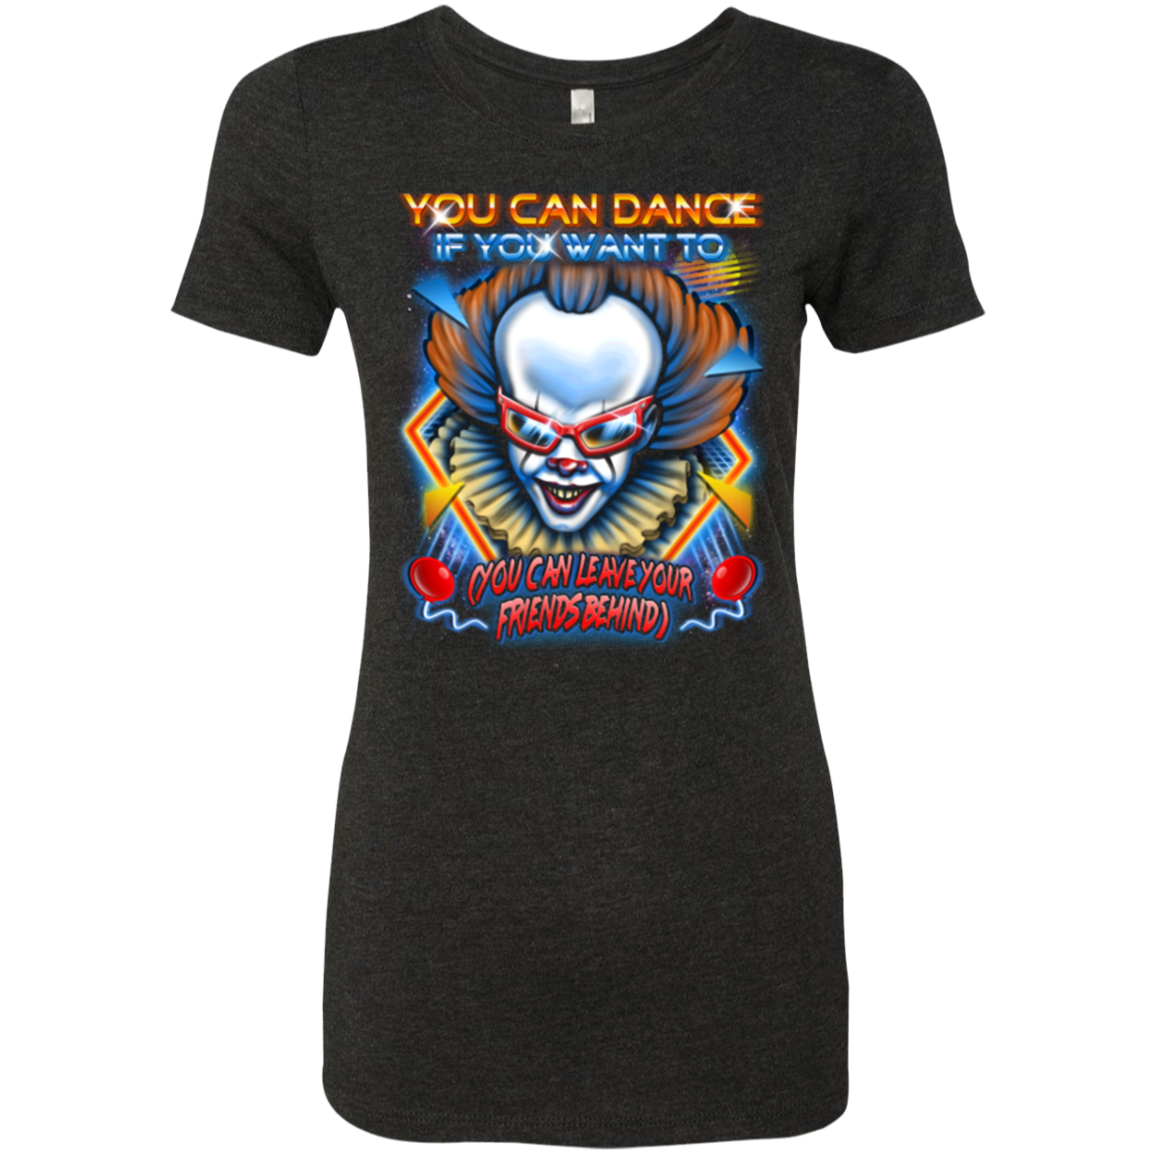 You can Dance Women's Triblend T-Shirt